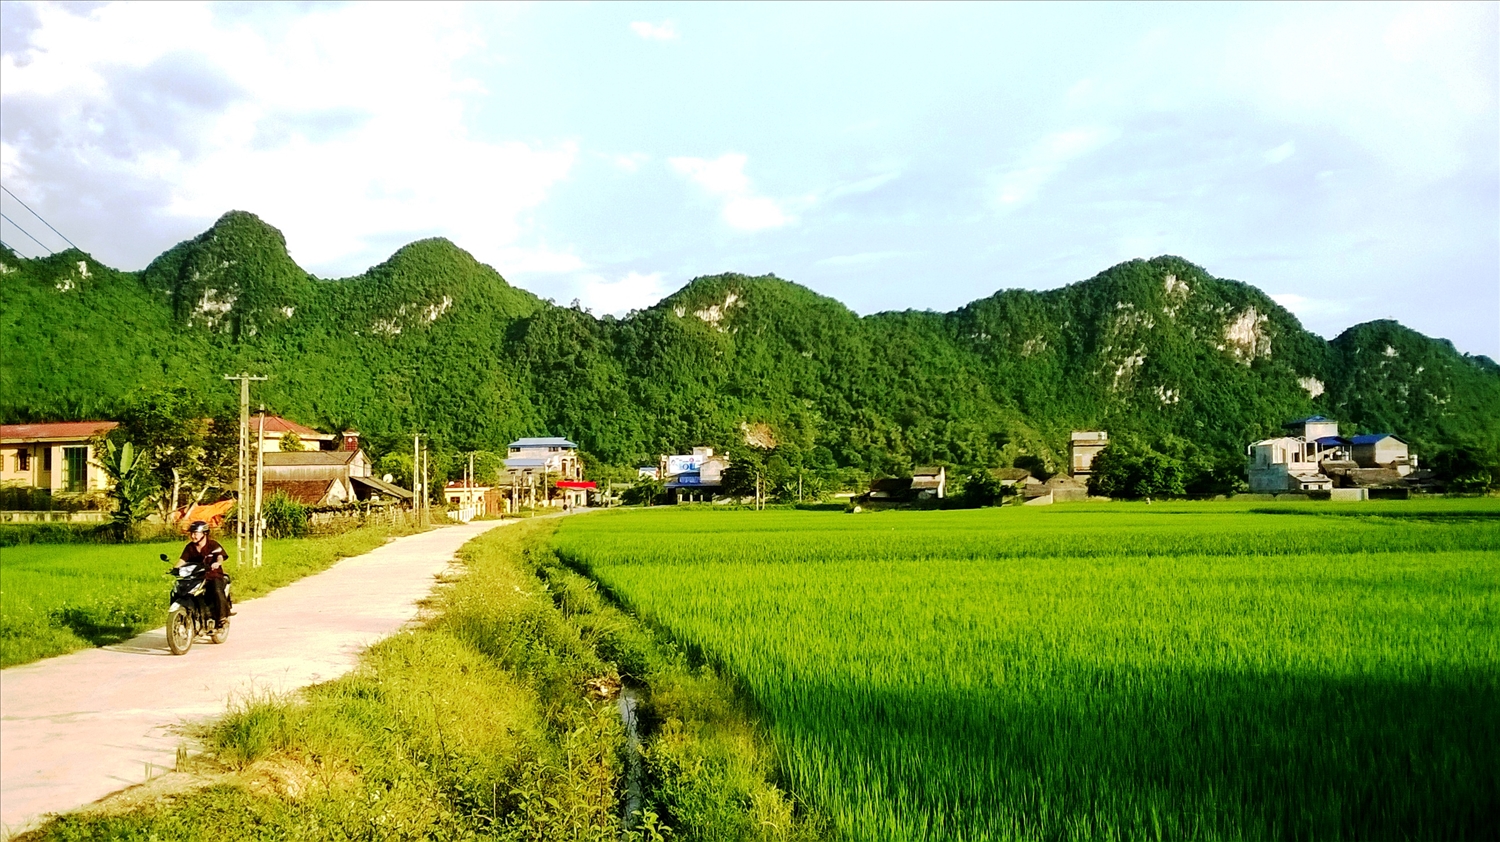 Những triền núi đá xanh thẳm bao bọc lấy những bản làng ở Chợ Chu.